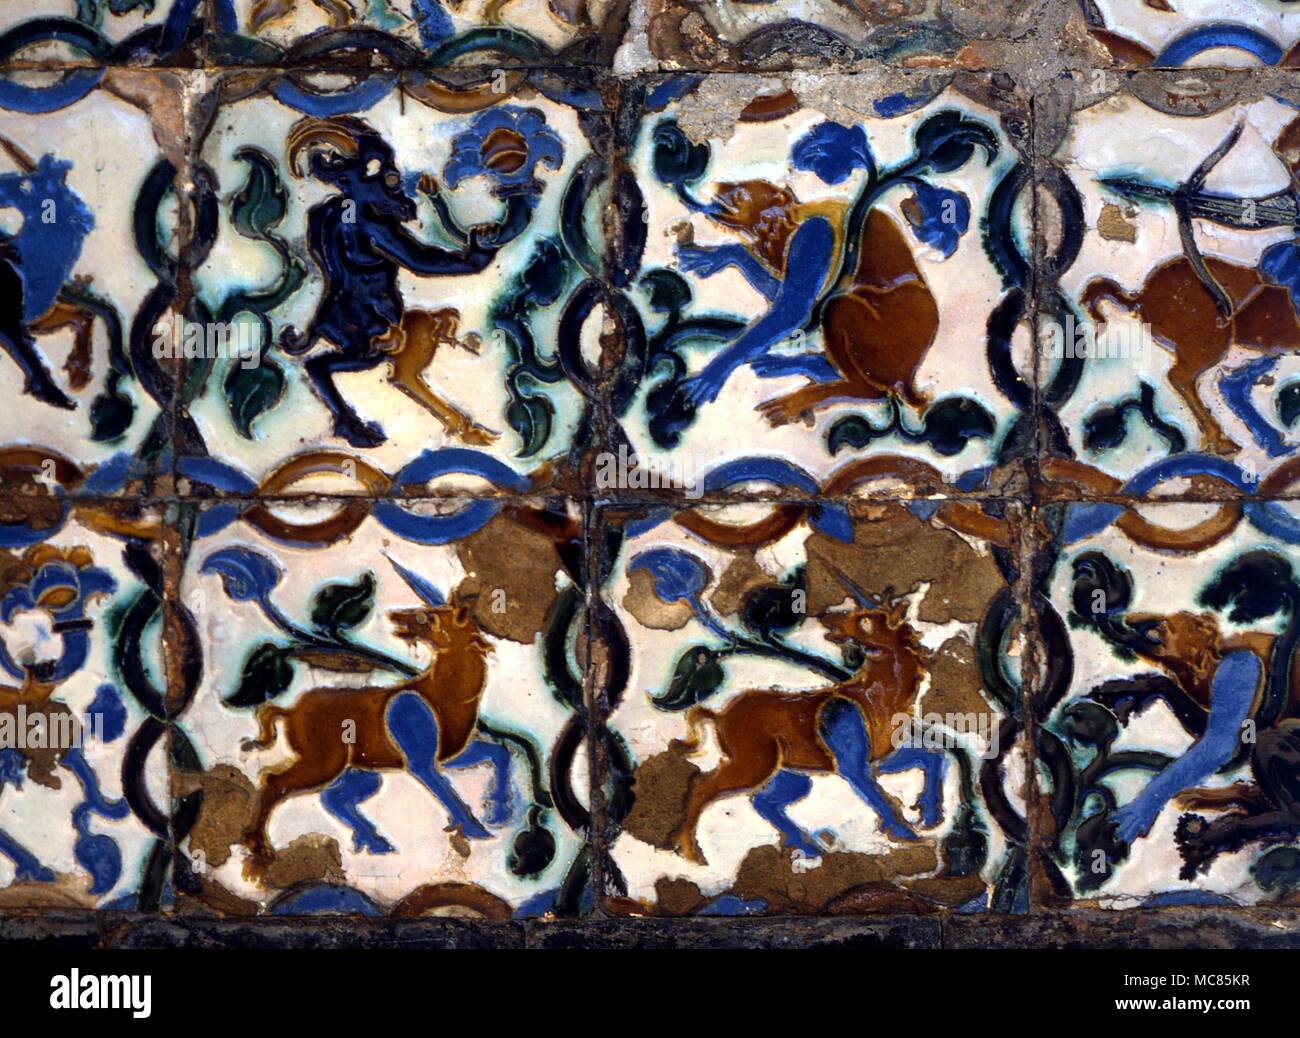 Emblematische Figuren von zwei Einhörner, und zwei Satyr - wie Ziegen. Kacheln an den Wänden, die im Garten der Alcazar, Sevilla, Spanien. Stockfoto